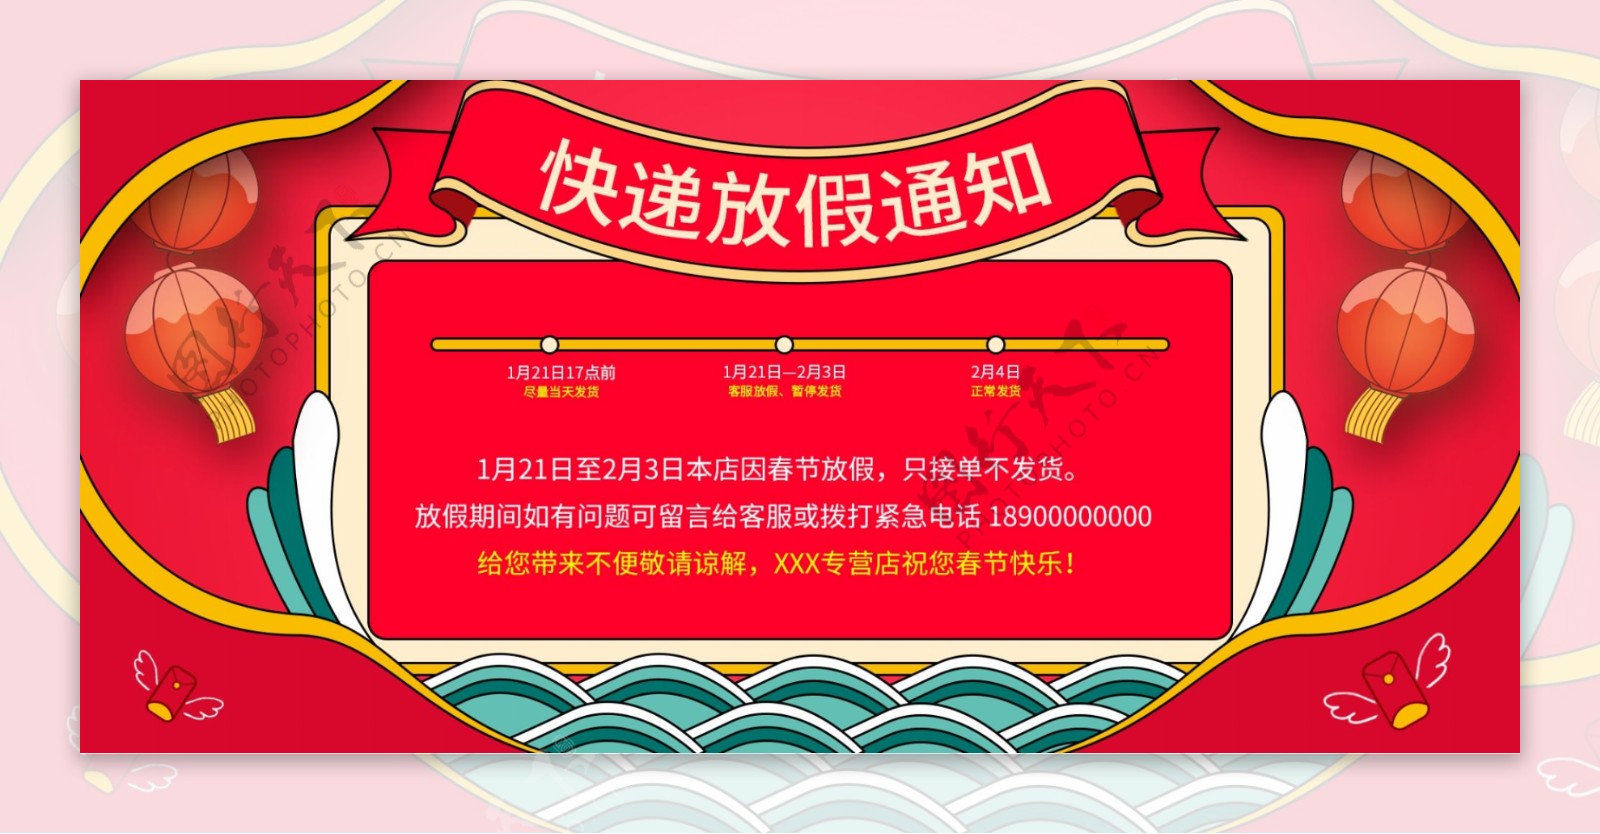 中国风红色喜庆新年放假快递停运通知